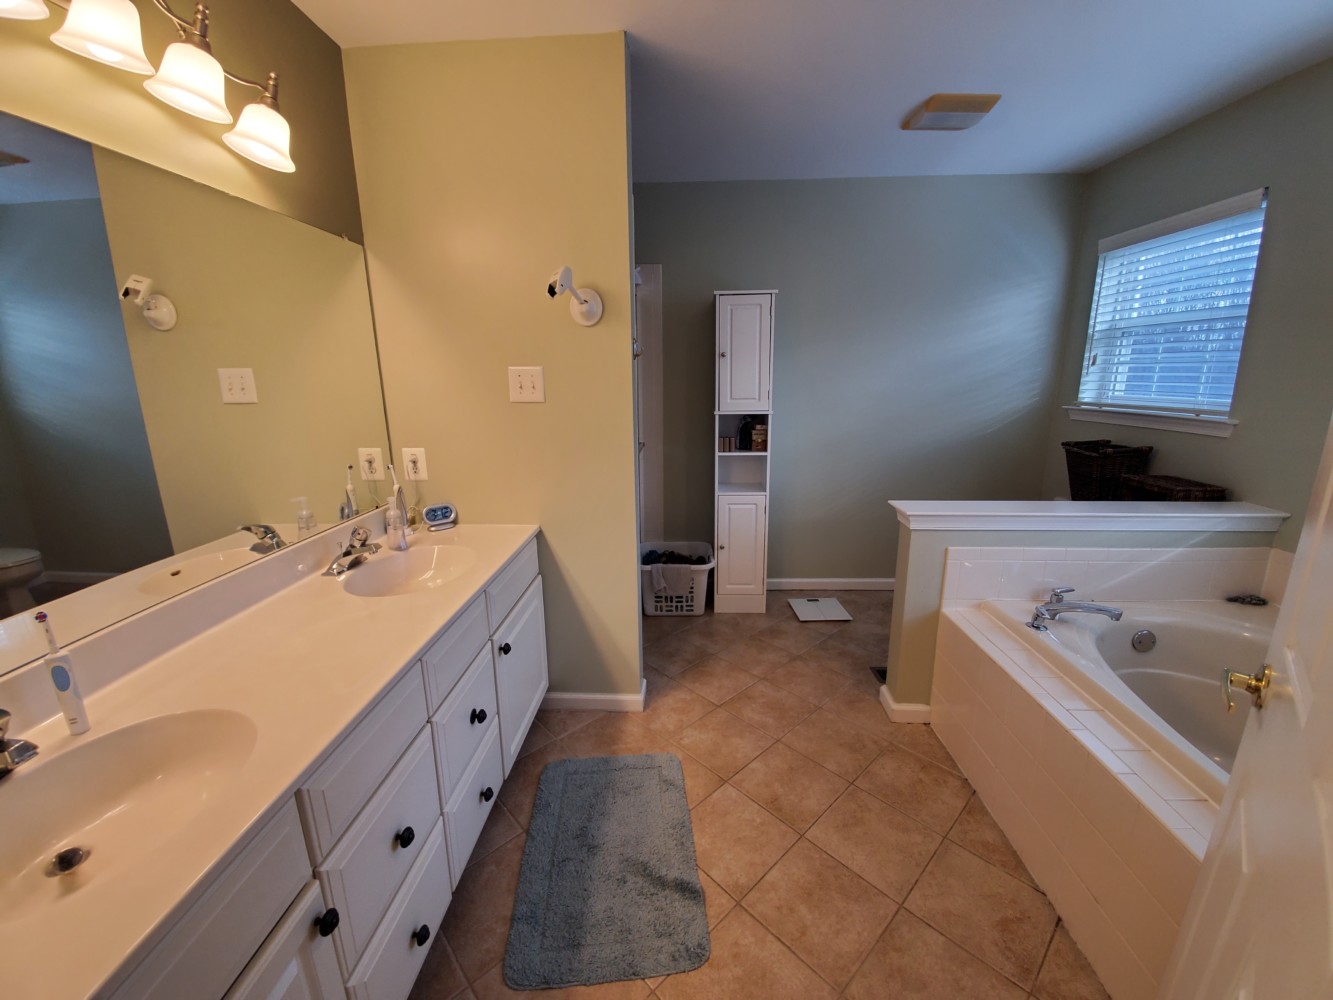 Bathroom Before Reno | Distinctive Interior Designs | Mount Laurel NJ